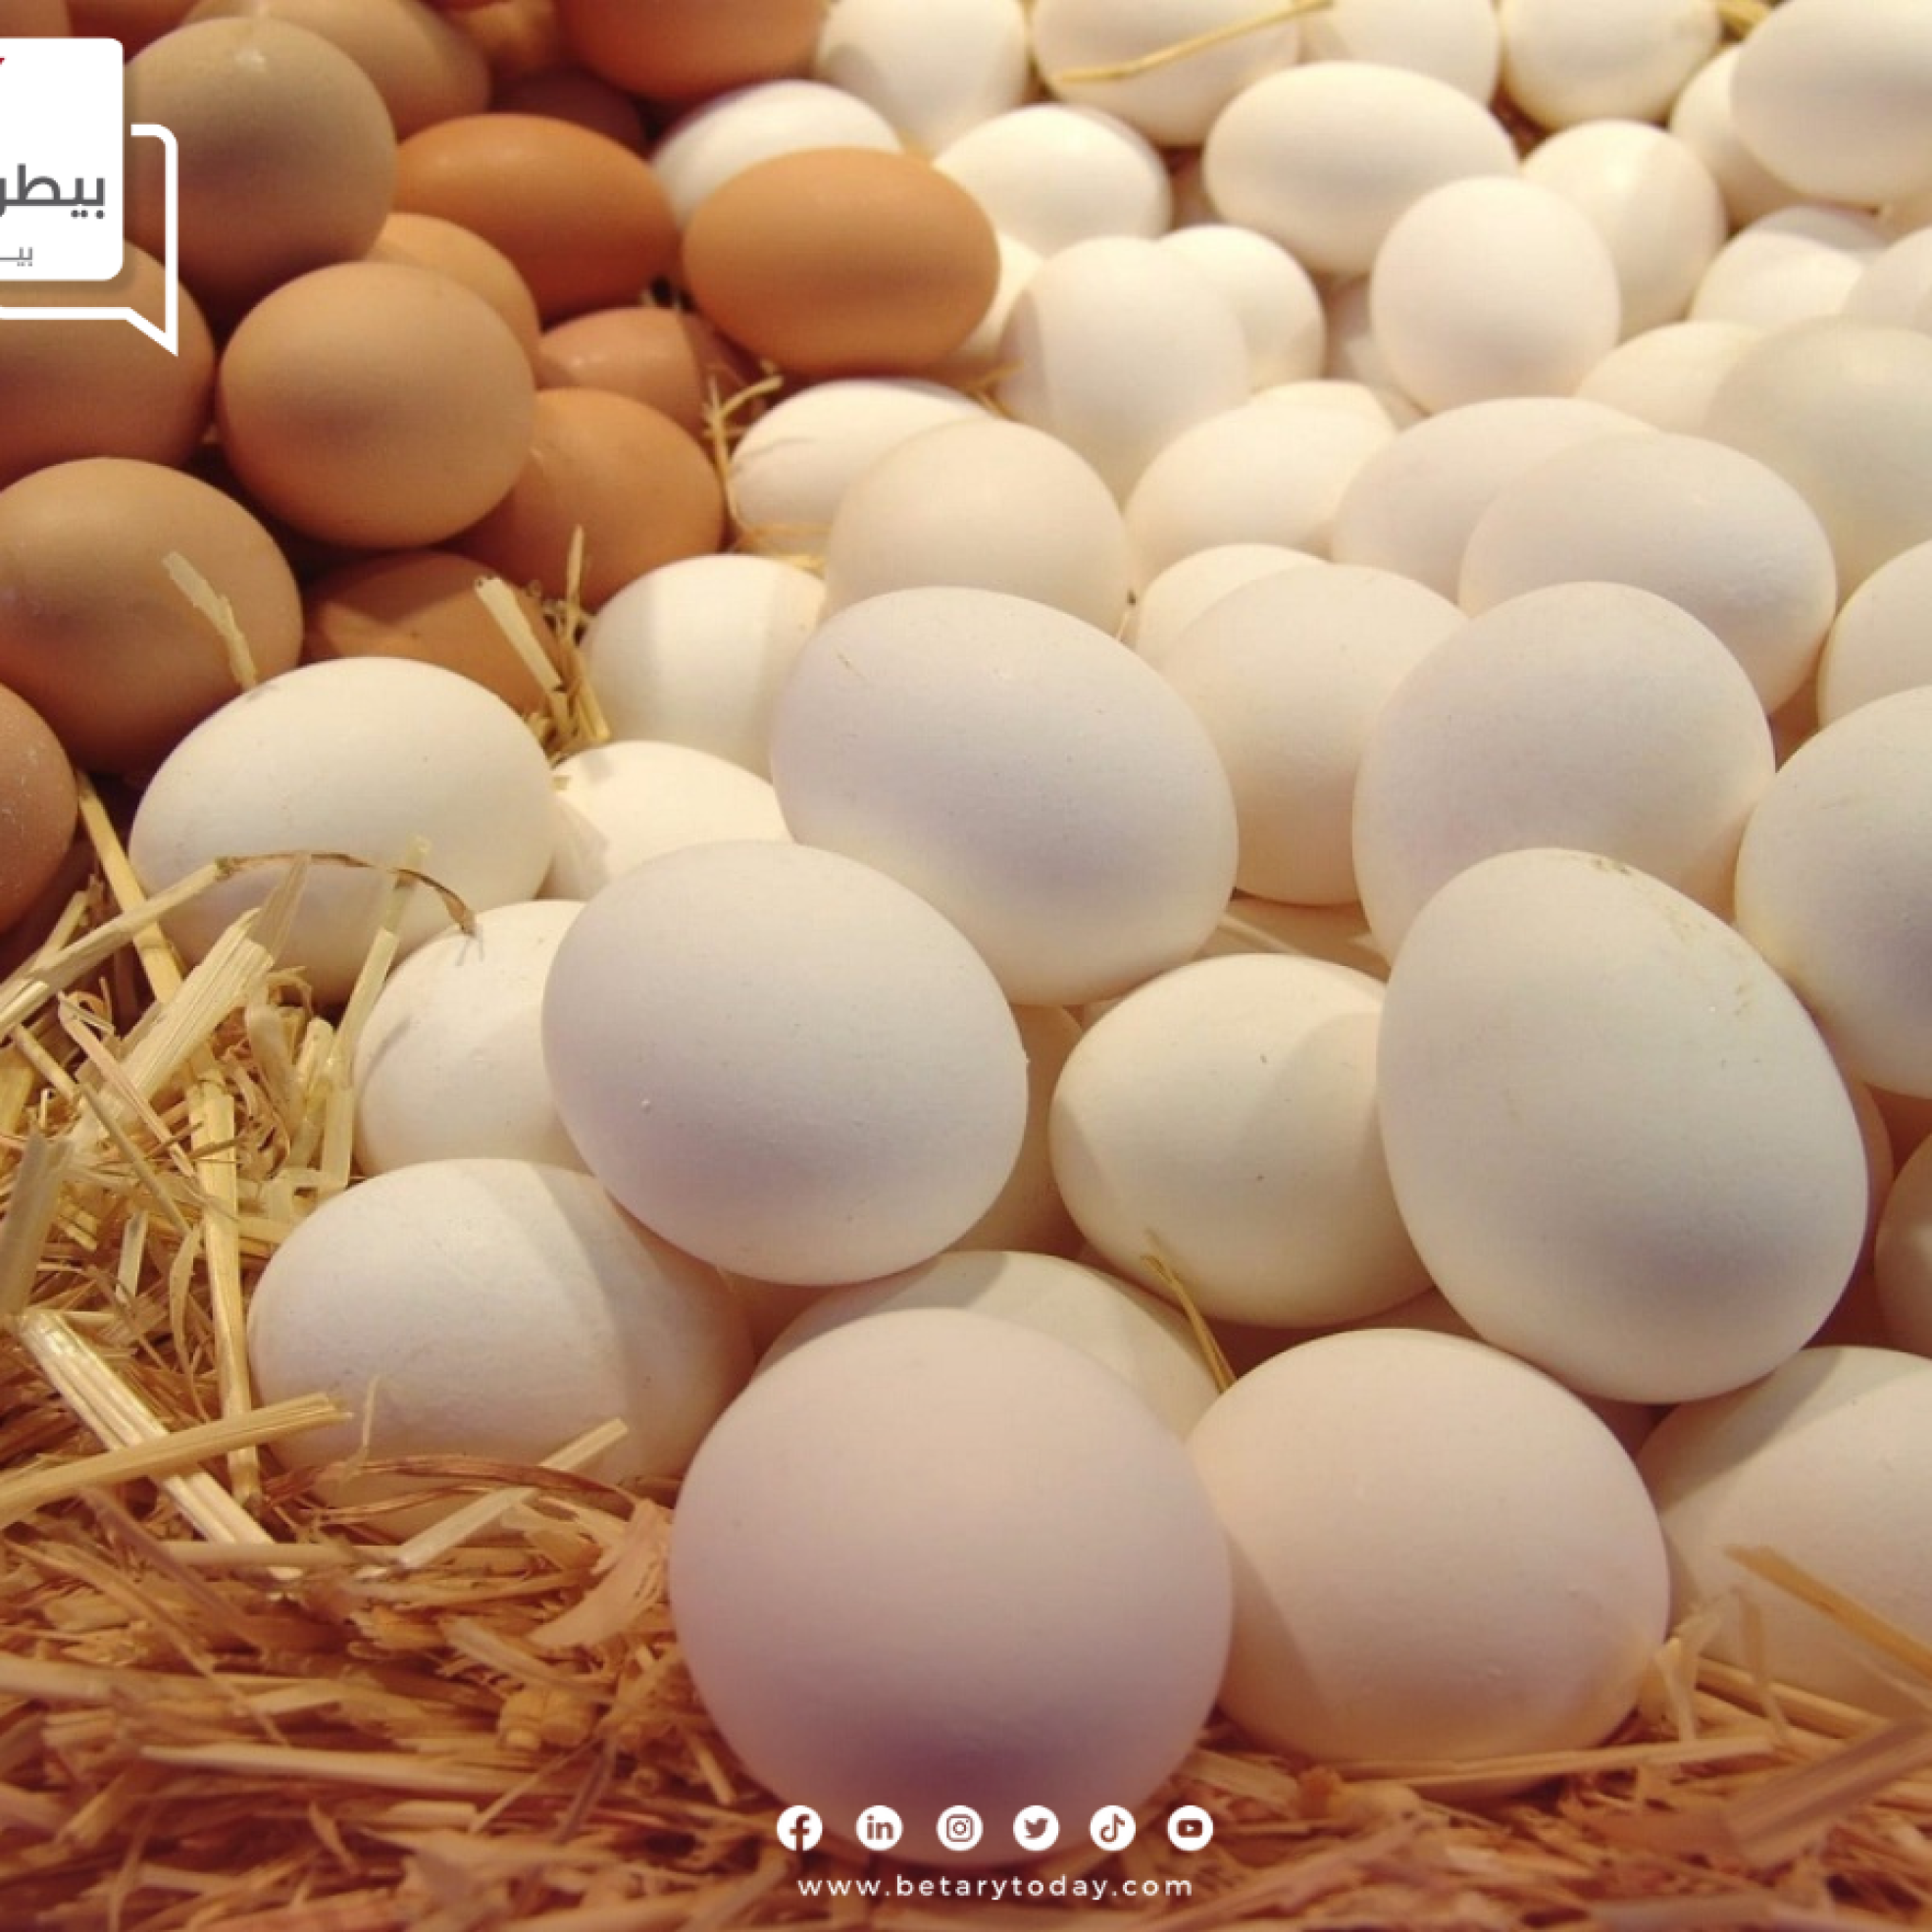 شعبة بيض المائدة… شهر أكتوبر هو موعد وصول أسعار بيض المائدة للأسعار العادلة